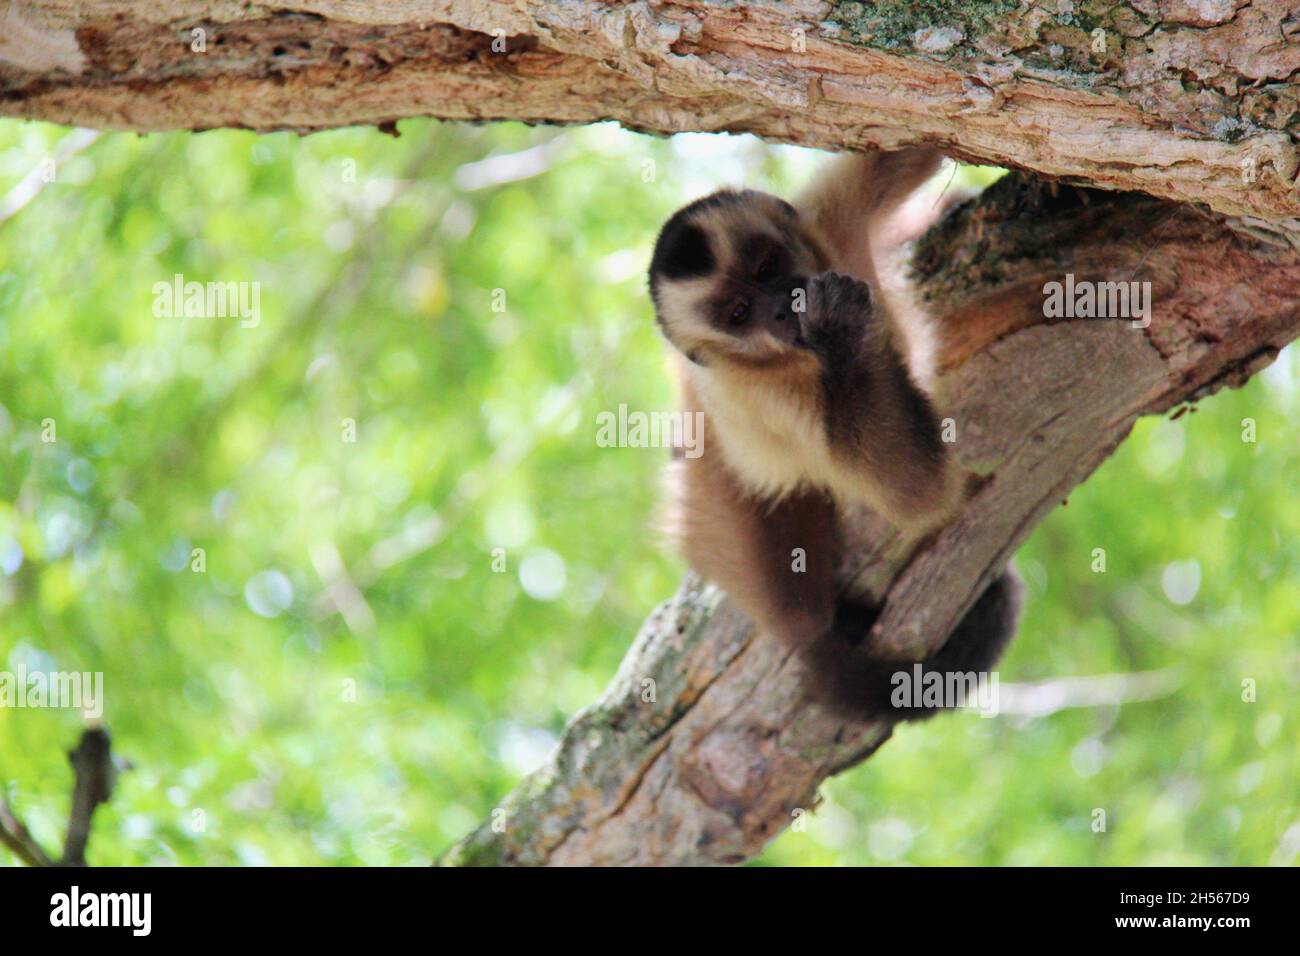 Baby-Affe hängt auf einem Baumstamm, saugt Daumen, Blick auf Fotokamera mit verschwommenem Hintergrund. Bonito - Mato Grosso do Sul - Brasilien. Stockfoto